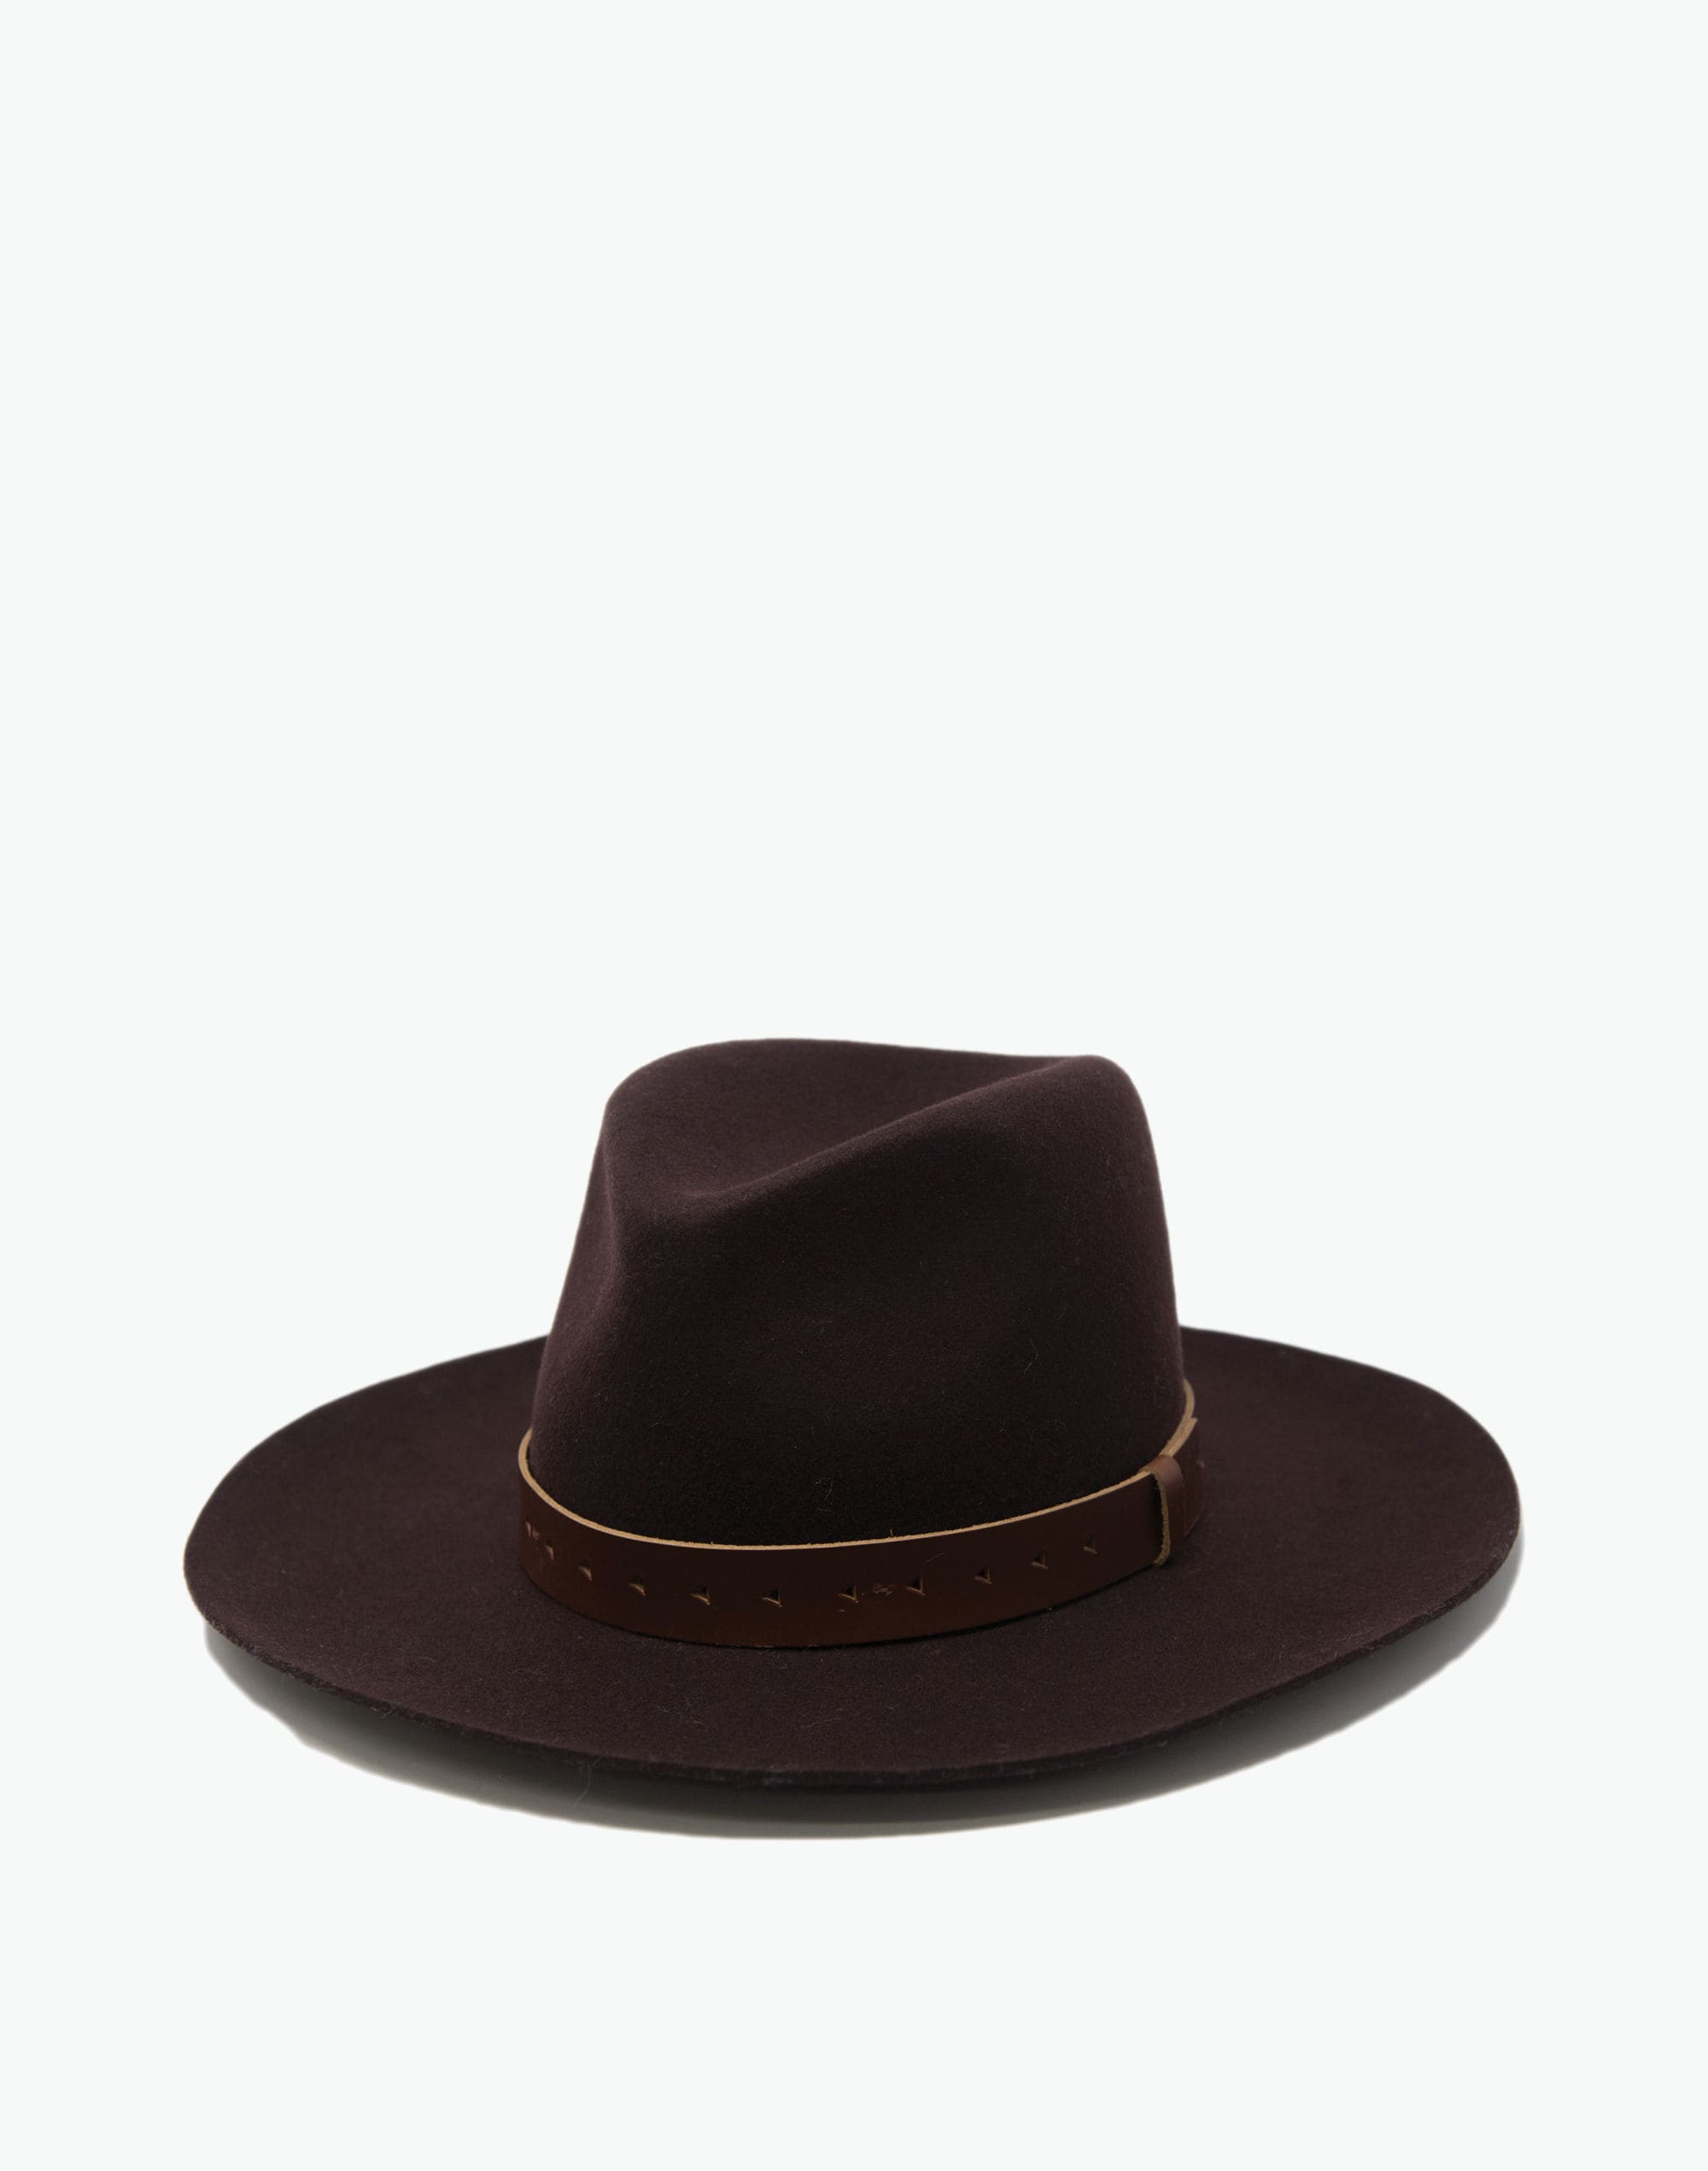 WYETH™ Wool Felt Harper Wide-Brim Fedora Hat | Madewell